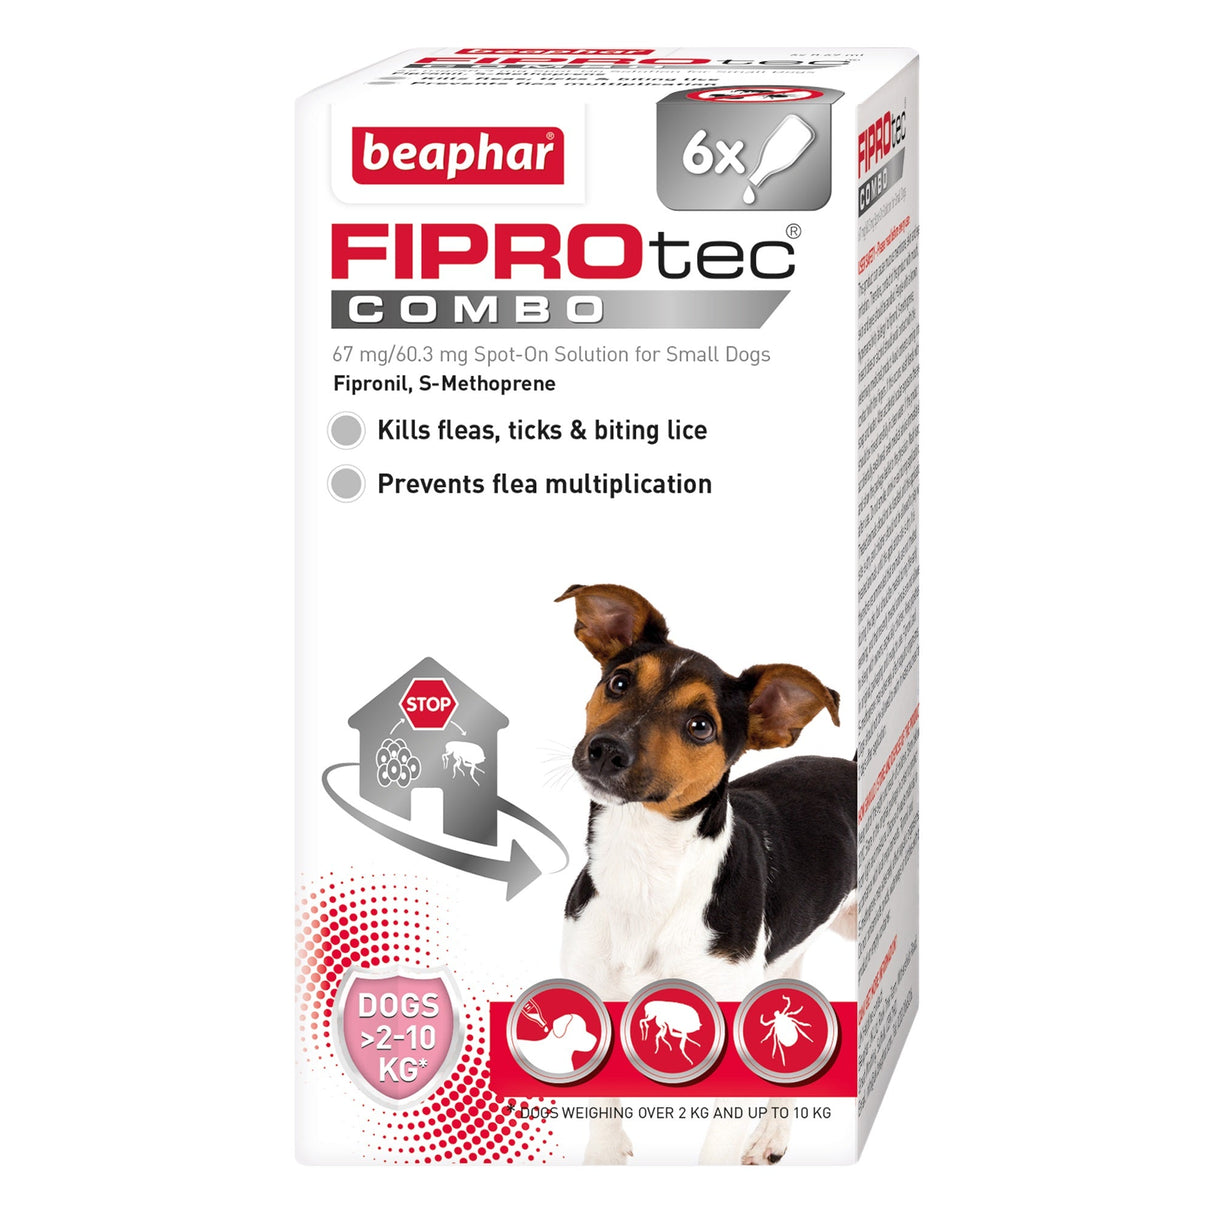 Beaphar FIPROtec COMBO Flea & Tick Spot On for Small Dogs, Beaphar, 6 pipettes x 4